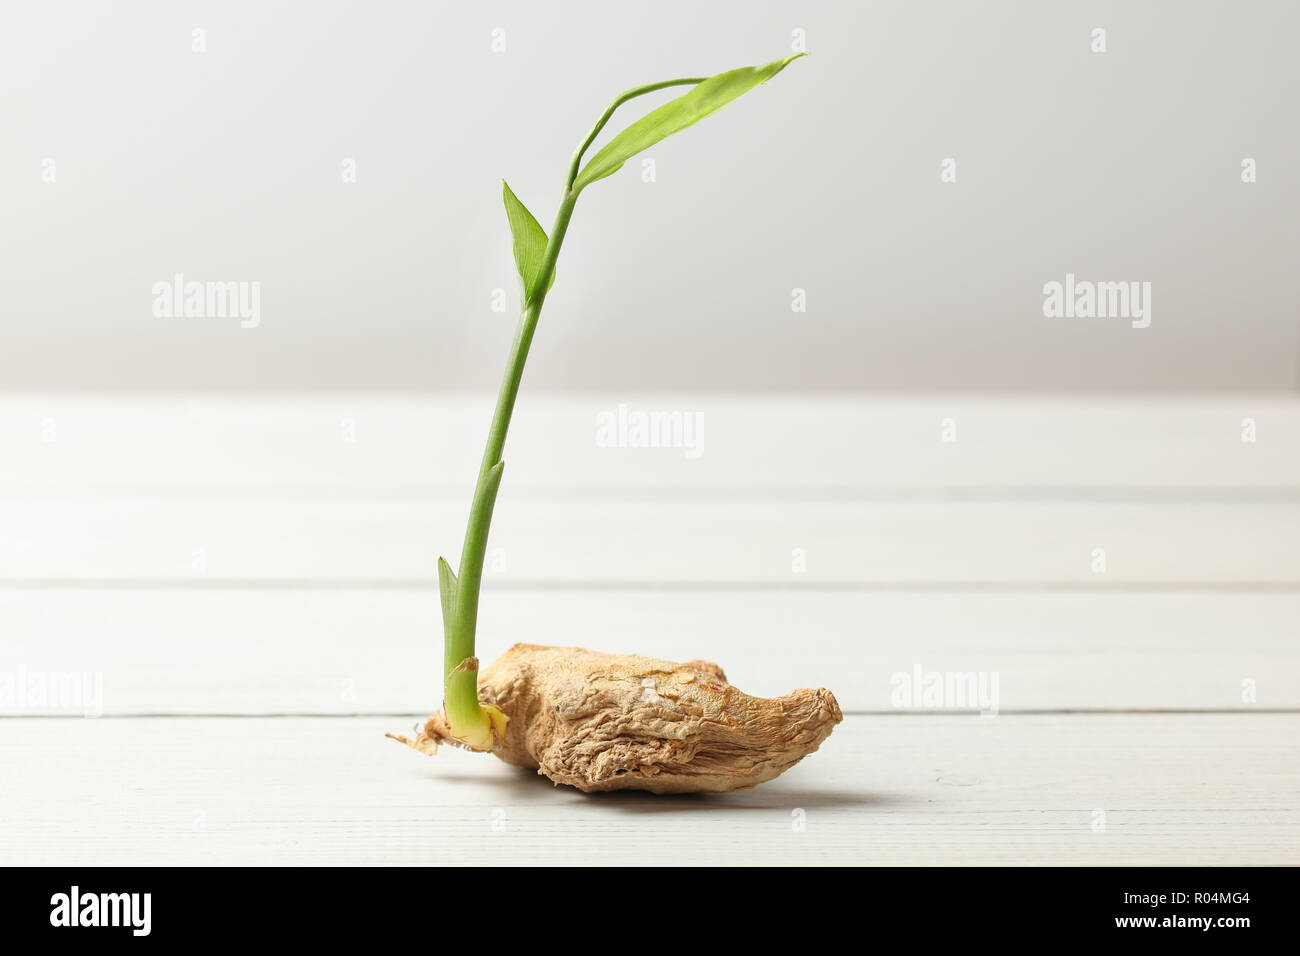 Asciugare lo zenzero (Zingiber officinale) root con il germoglio verde, sulle schede di bianco e lo sfondo. Foto Stock